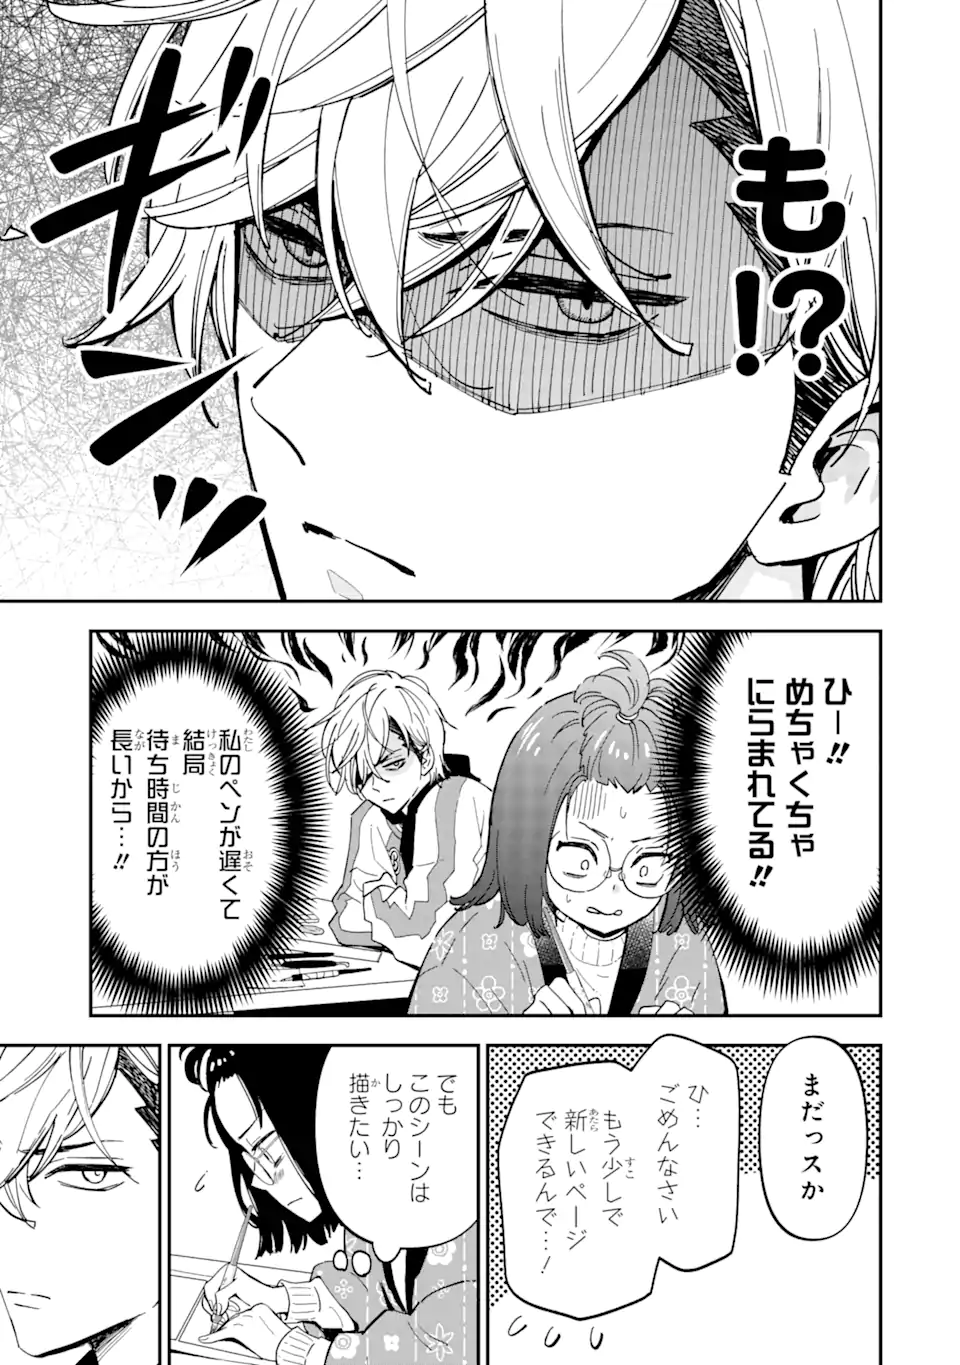 Yankee Assistant no Ashizawa-kun ni Koi wo shita - Chapter 1.1 - Page 11